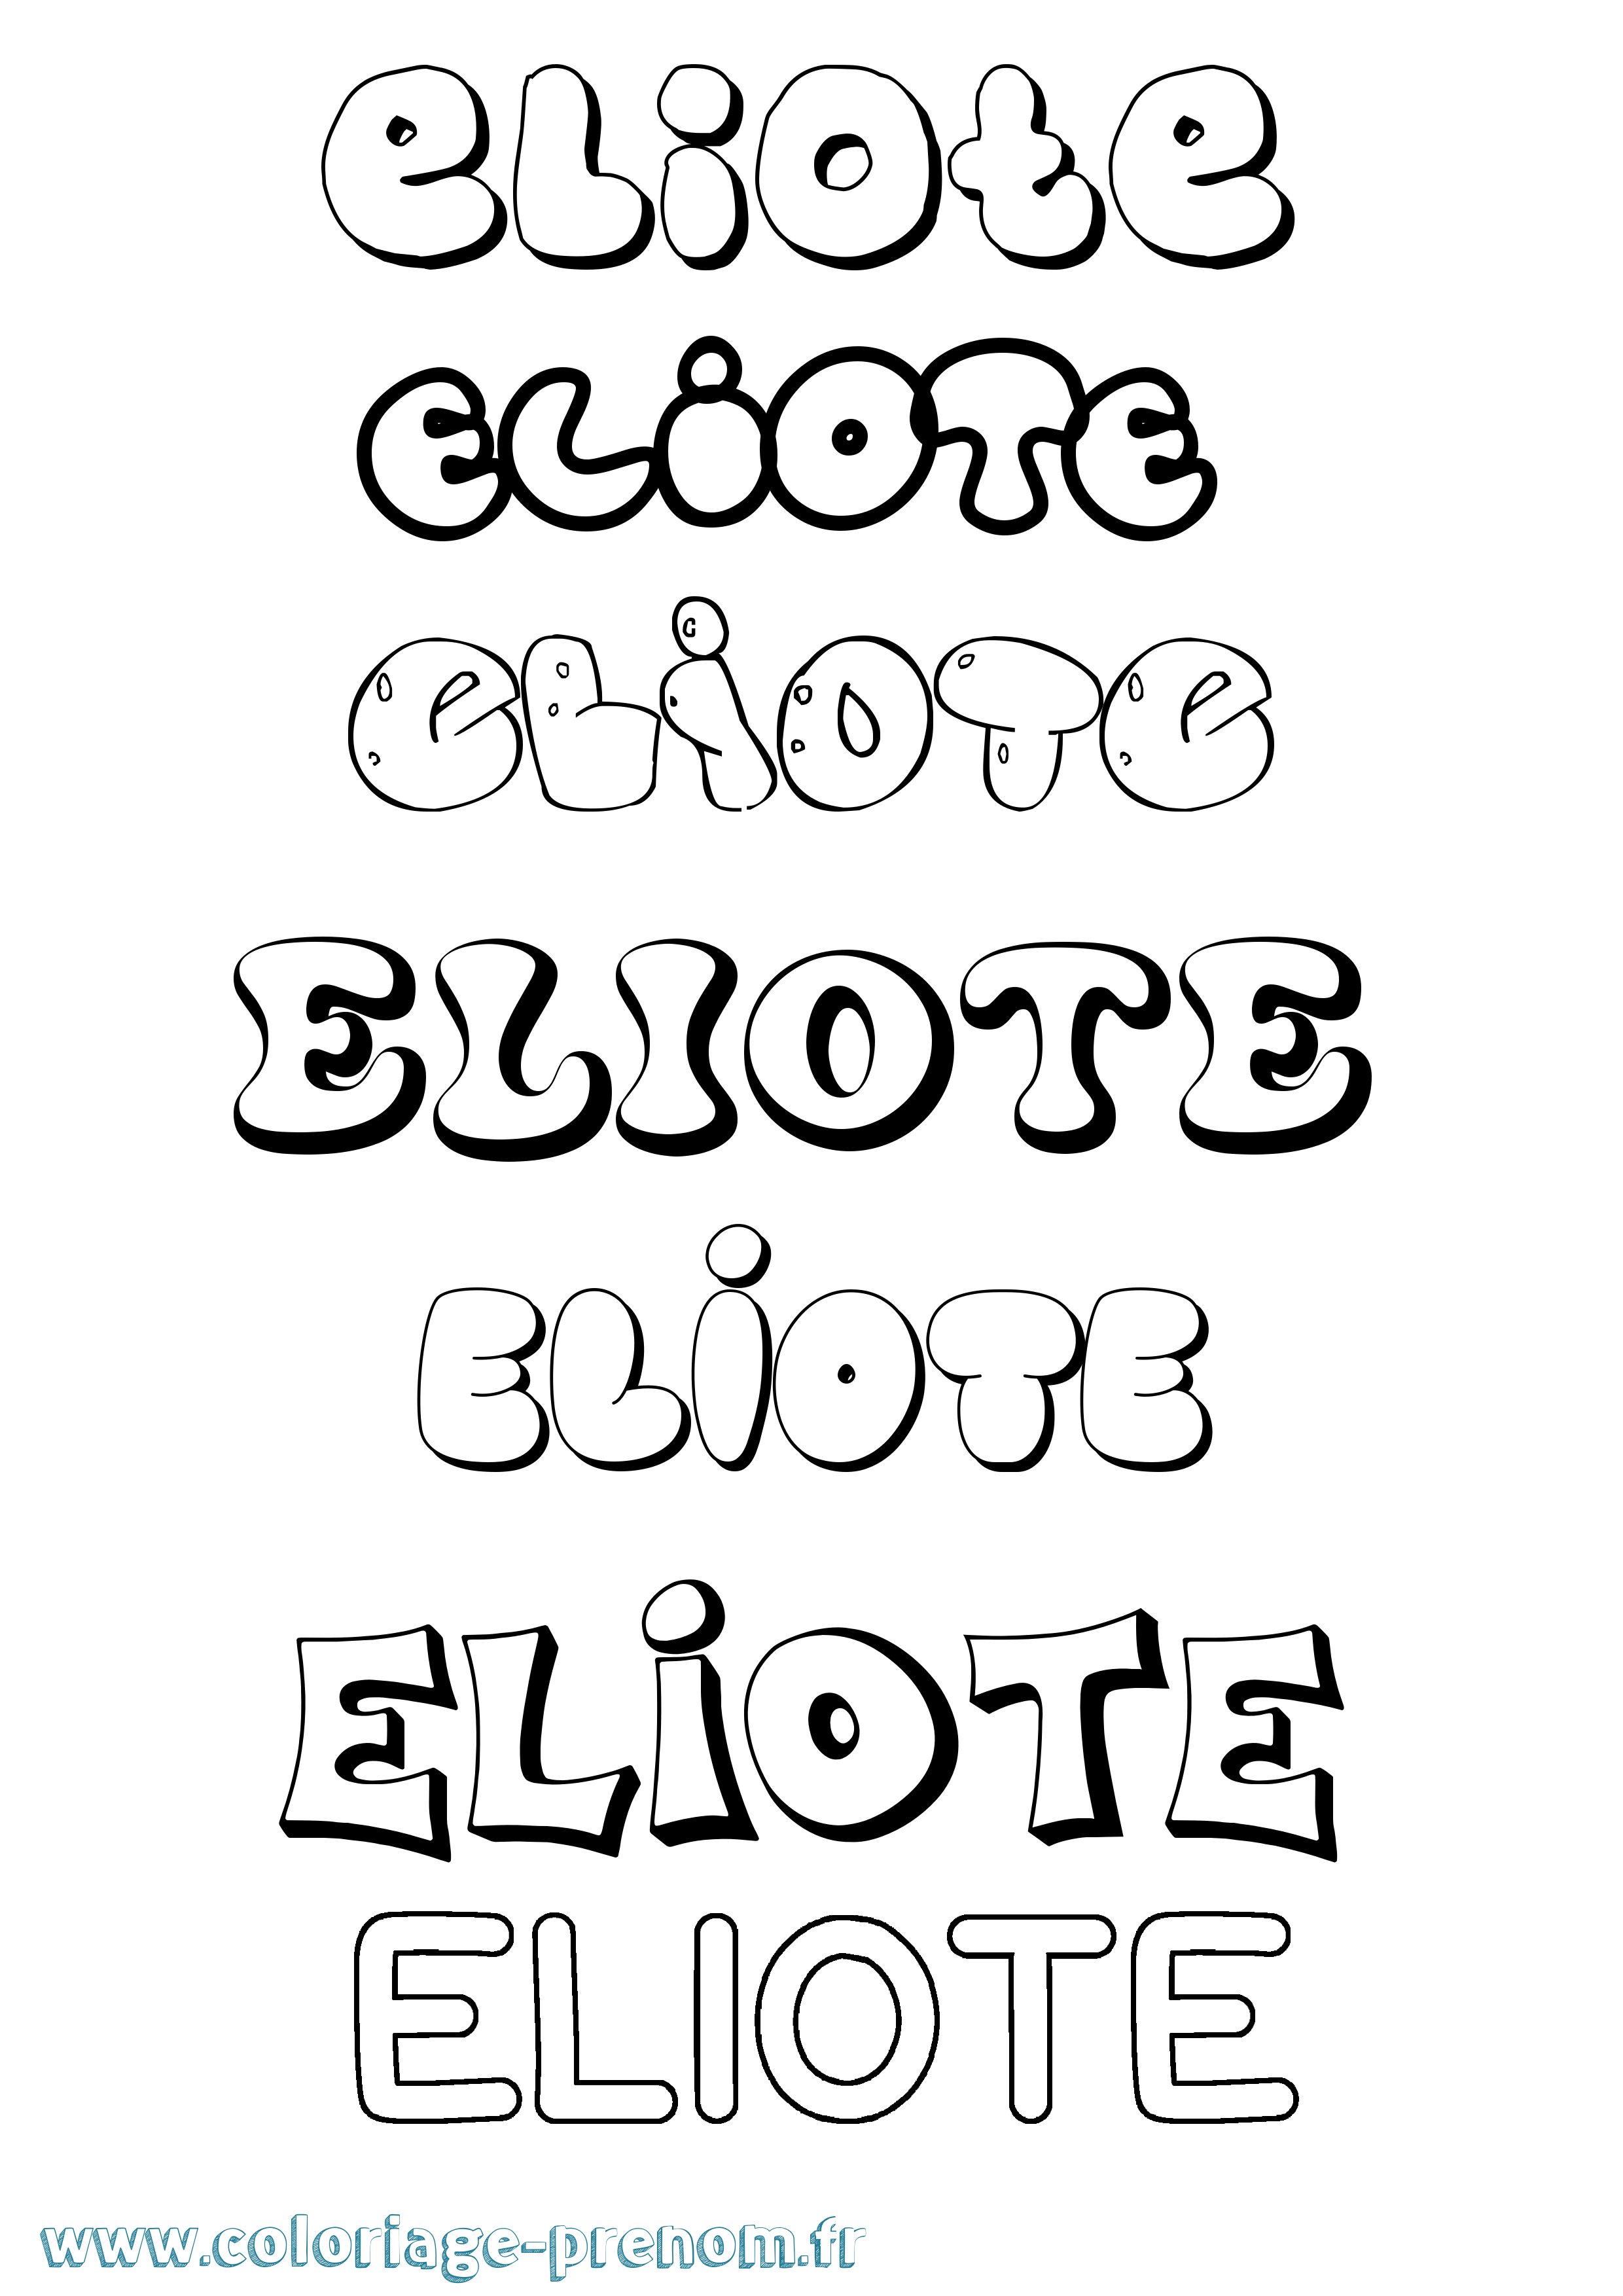 Coloriage prénom Eliote Bubble